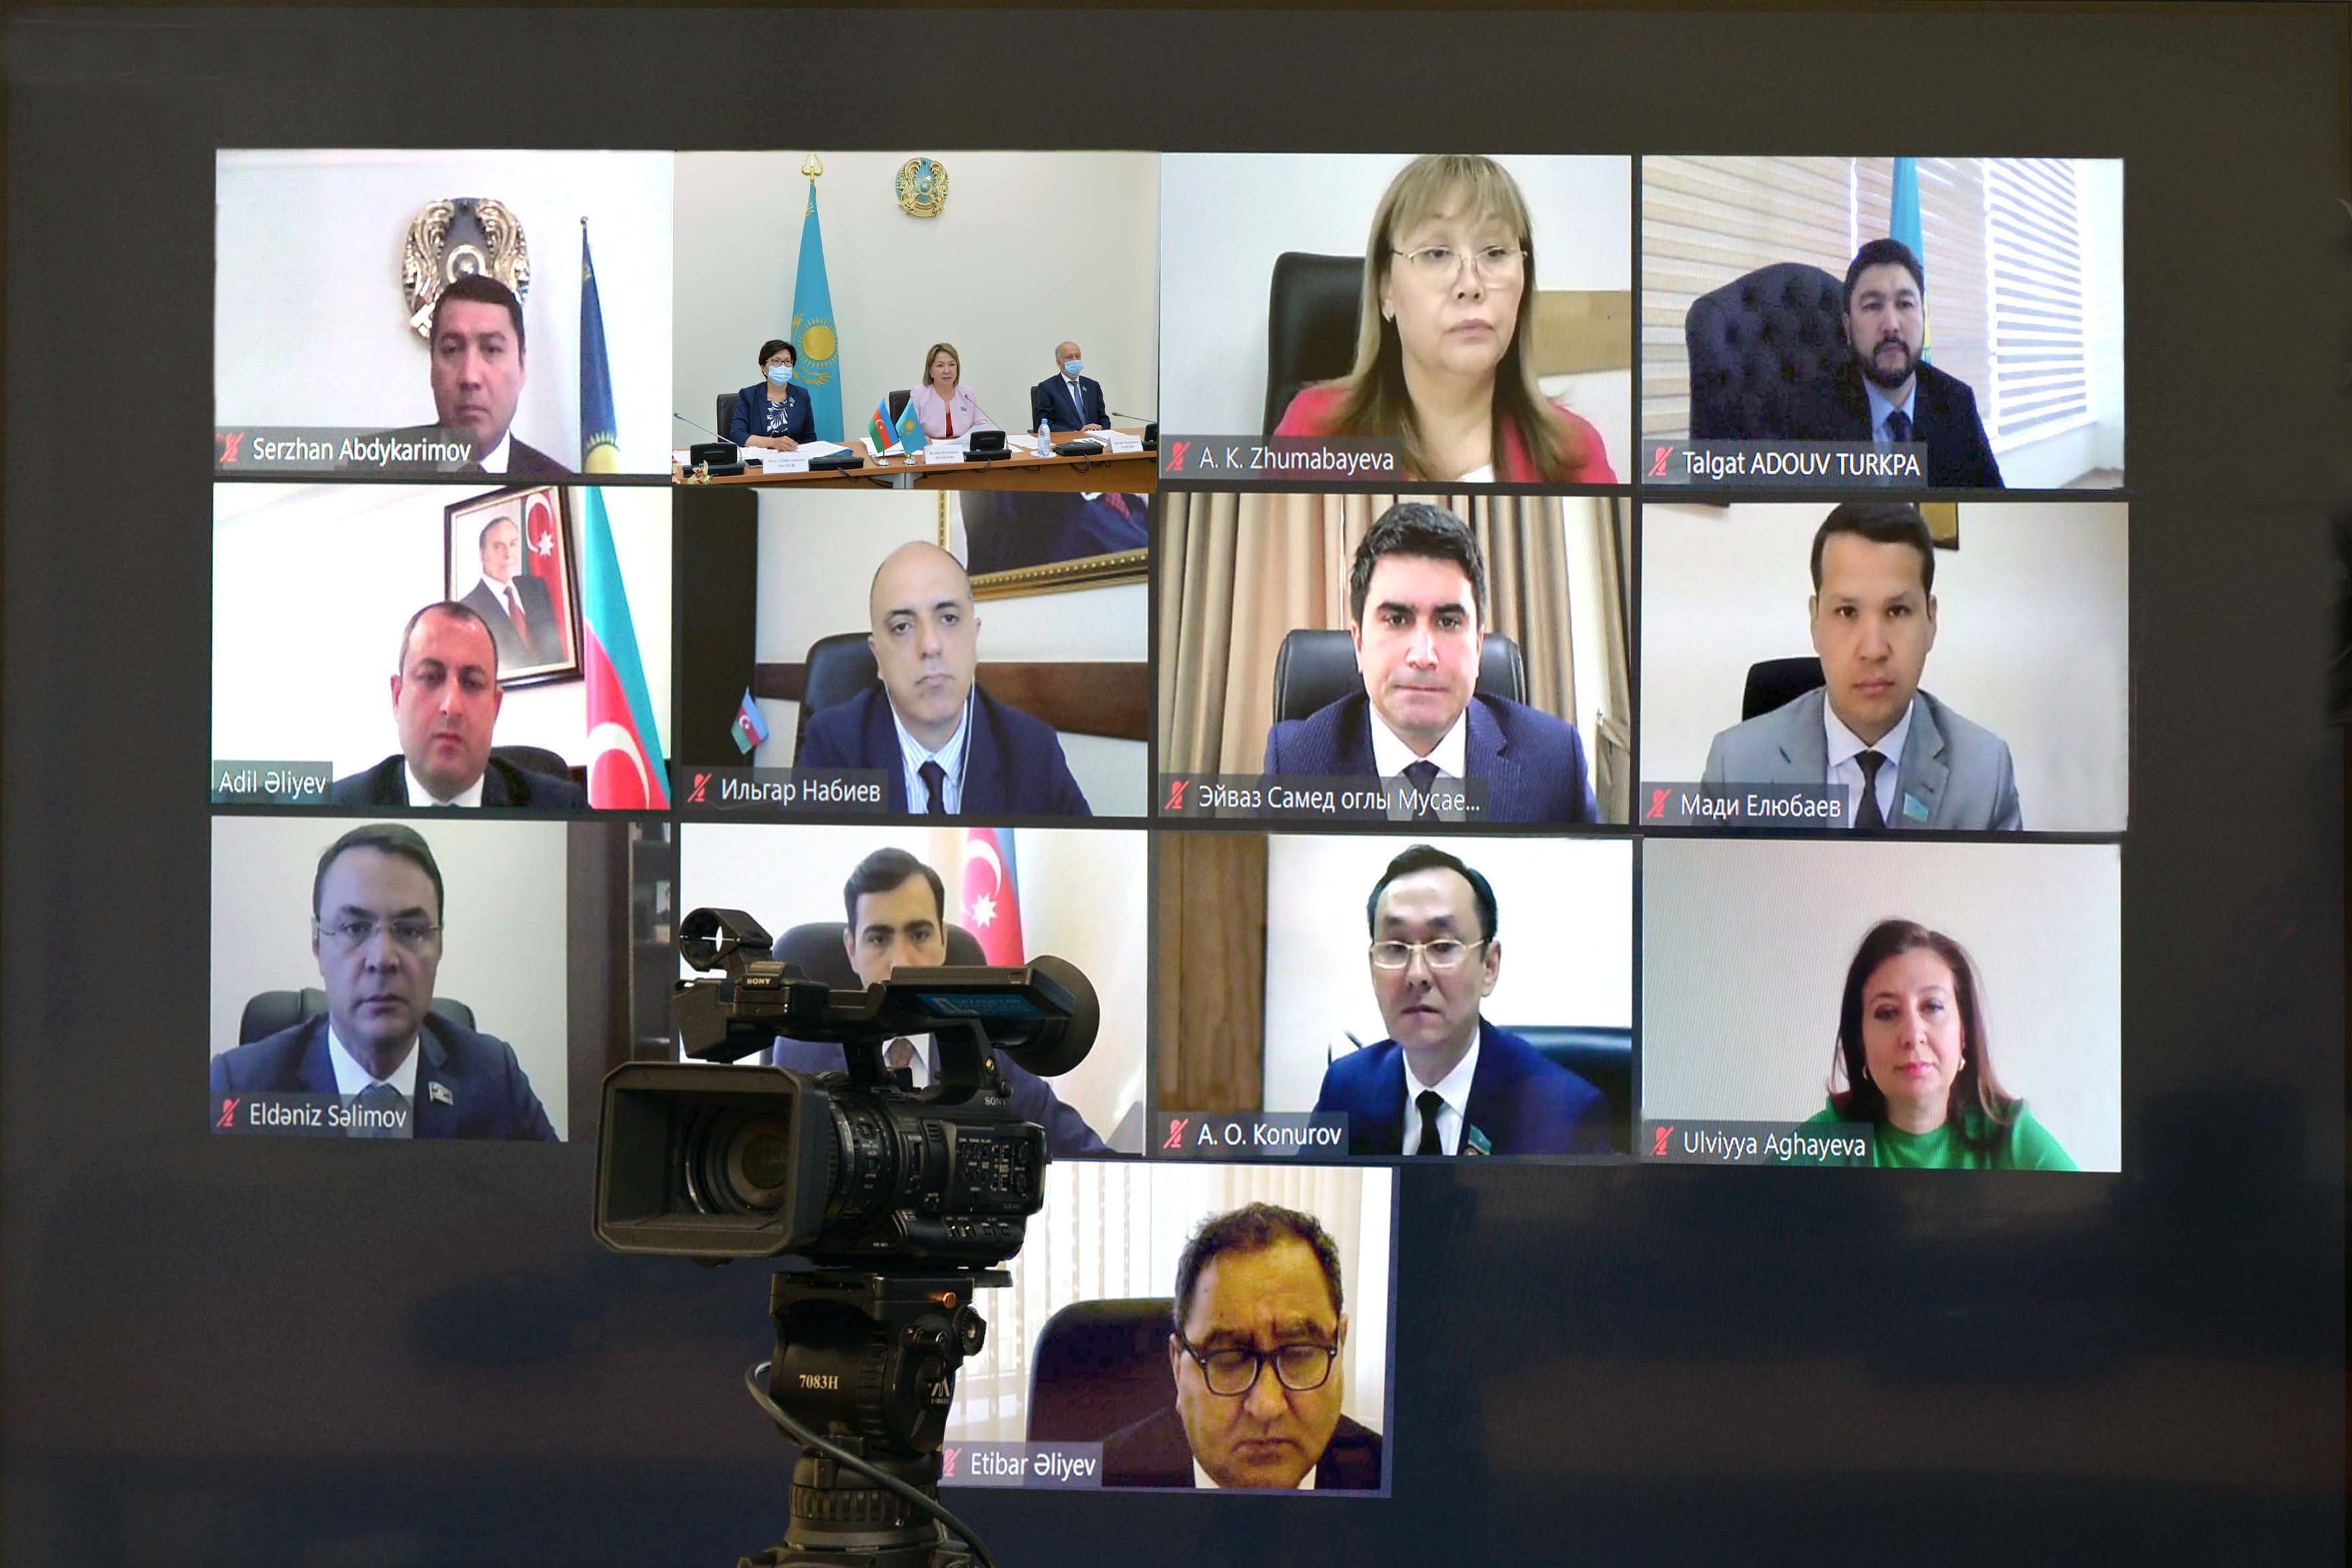 Выступление Елюбаева М.С. на онлайн-встрече членов межпарламентской группы по сотрудничеству «Казахстан – Азербайджан» о политических реформах в Казахстане.